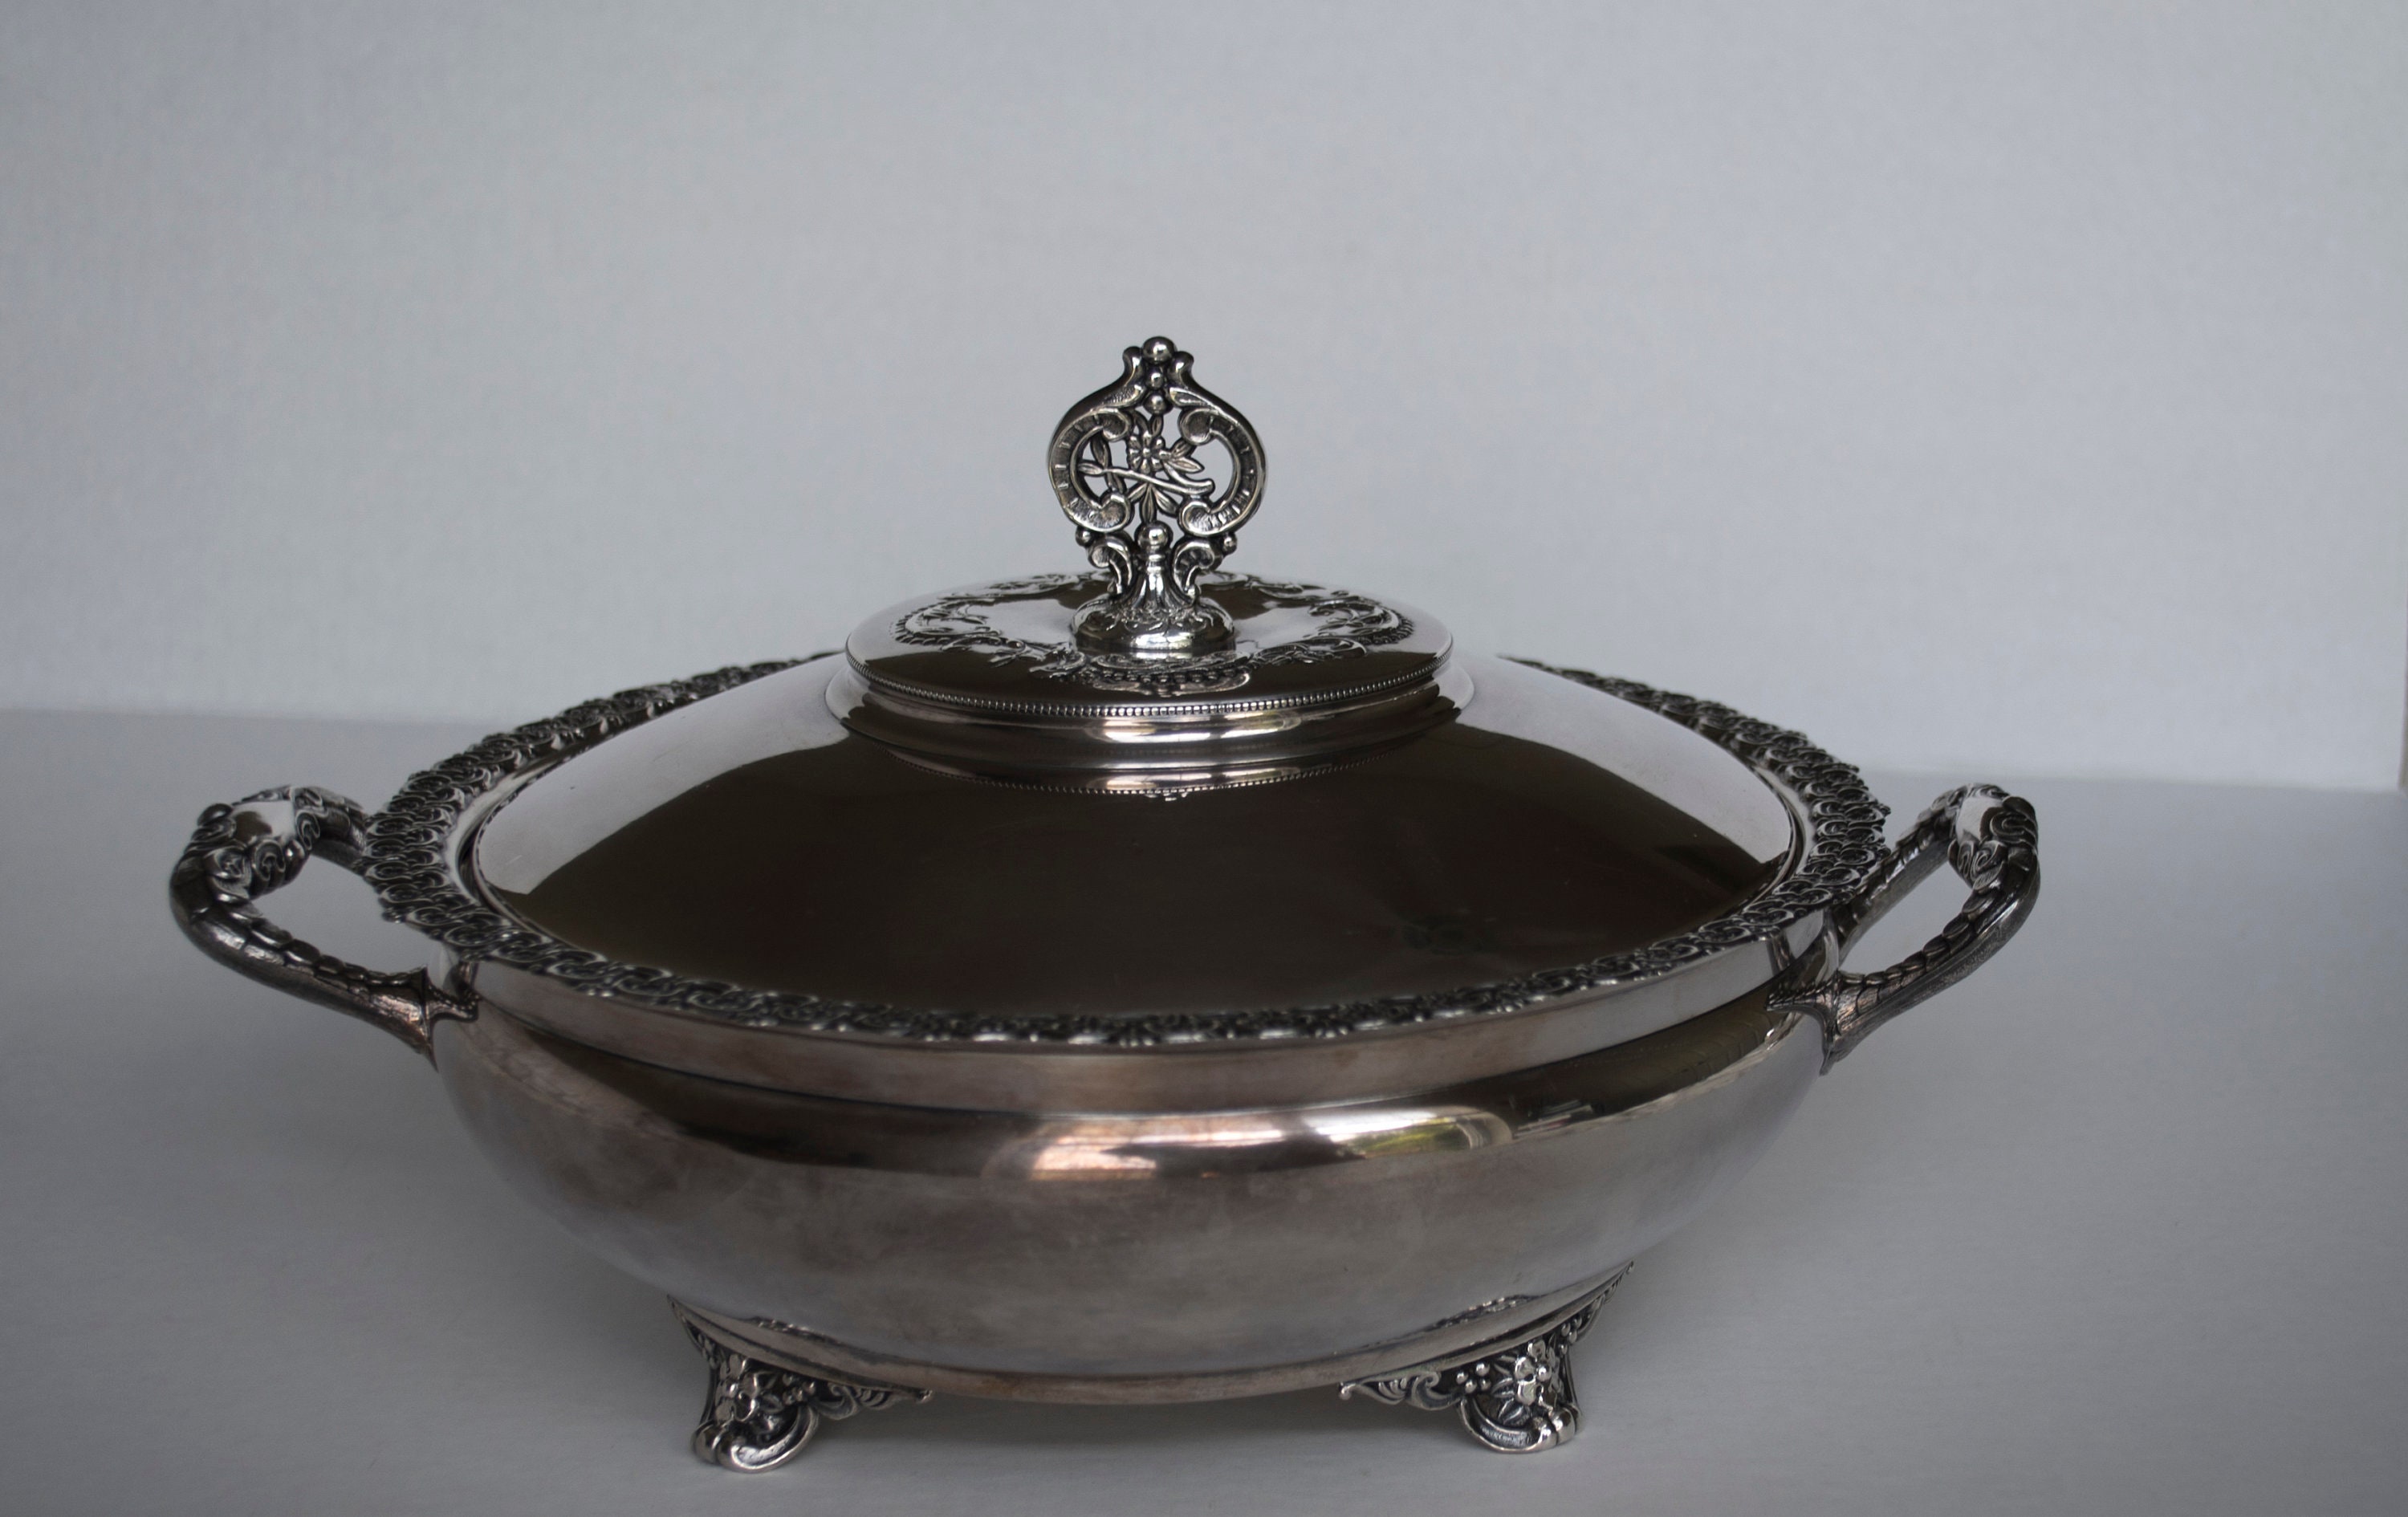 St Louis Silver Co Rare Vintage Silver Plate Casserole Bowl Dish Quadruple  # 57